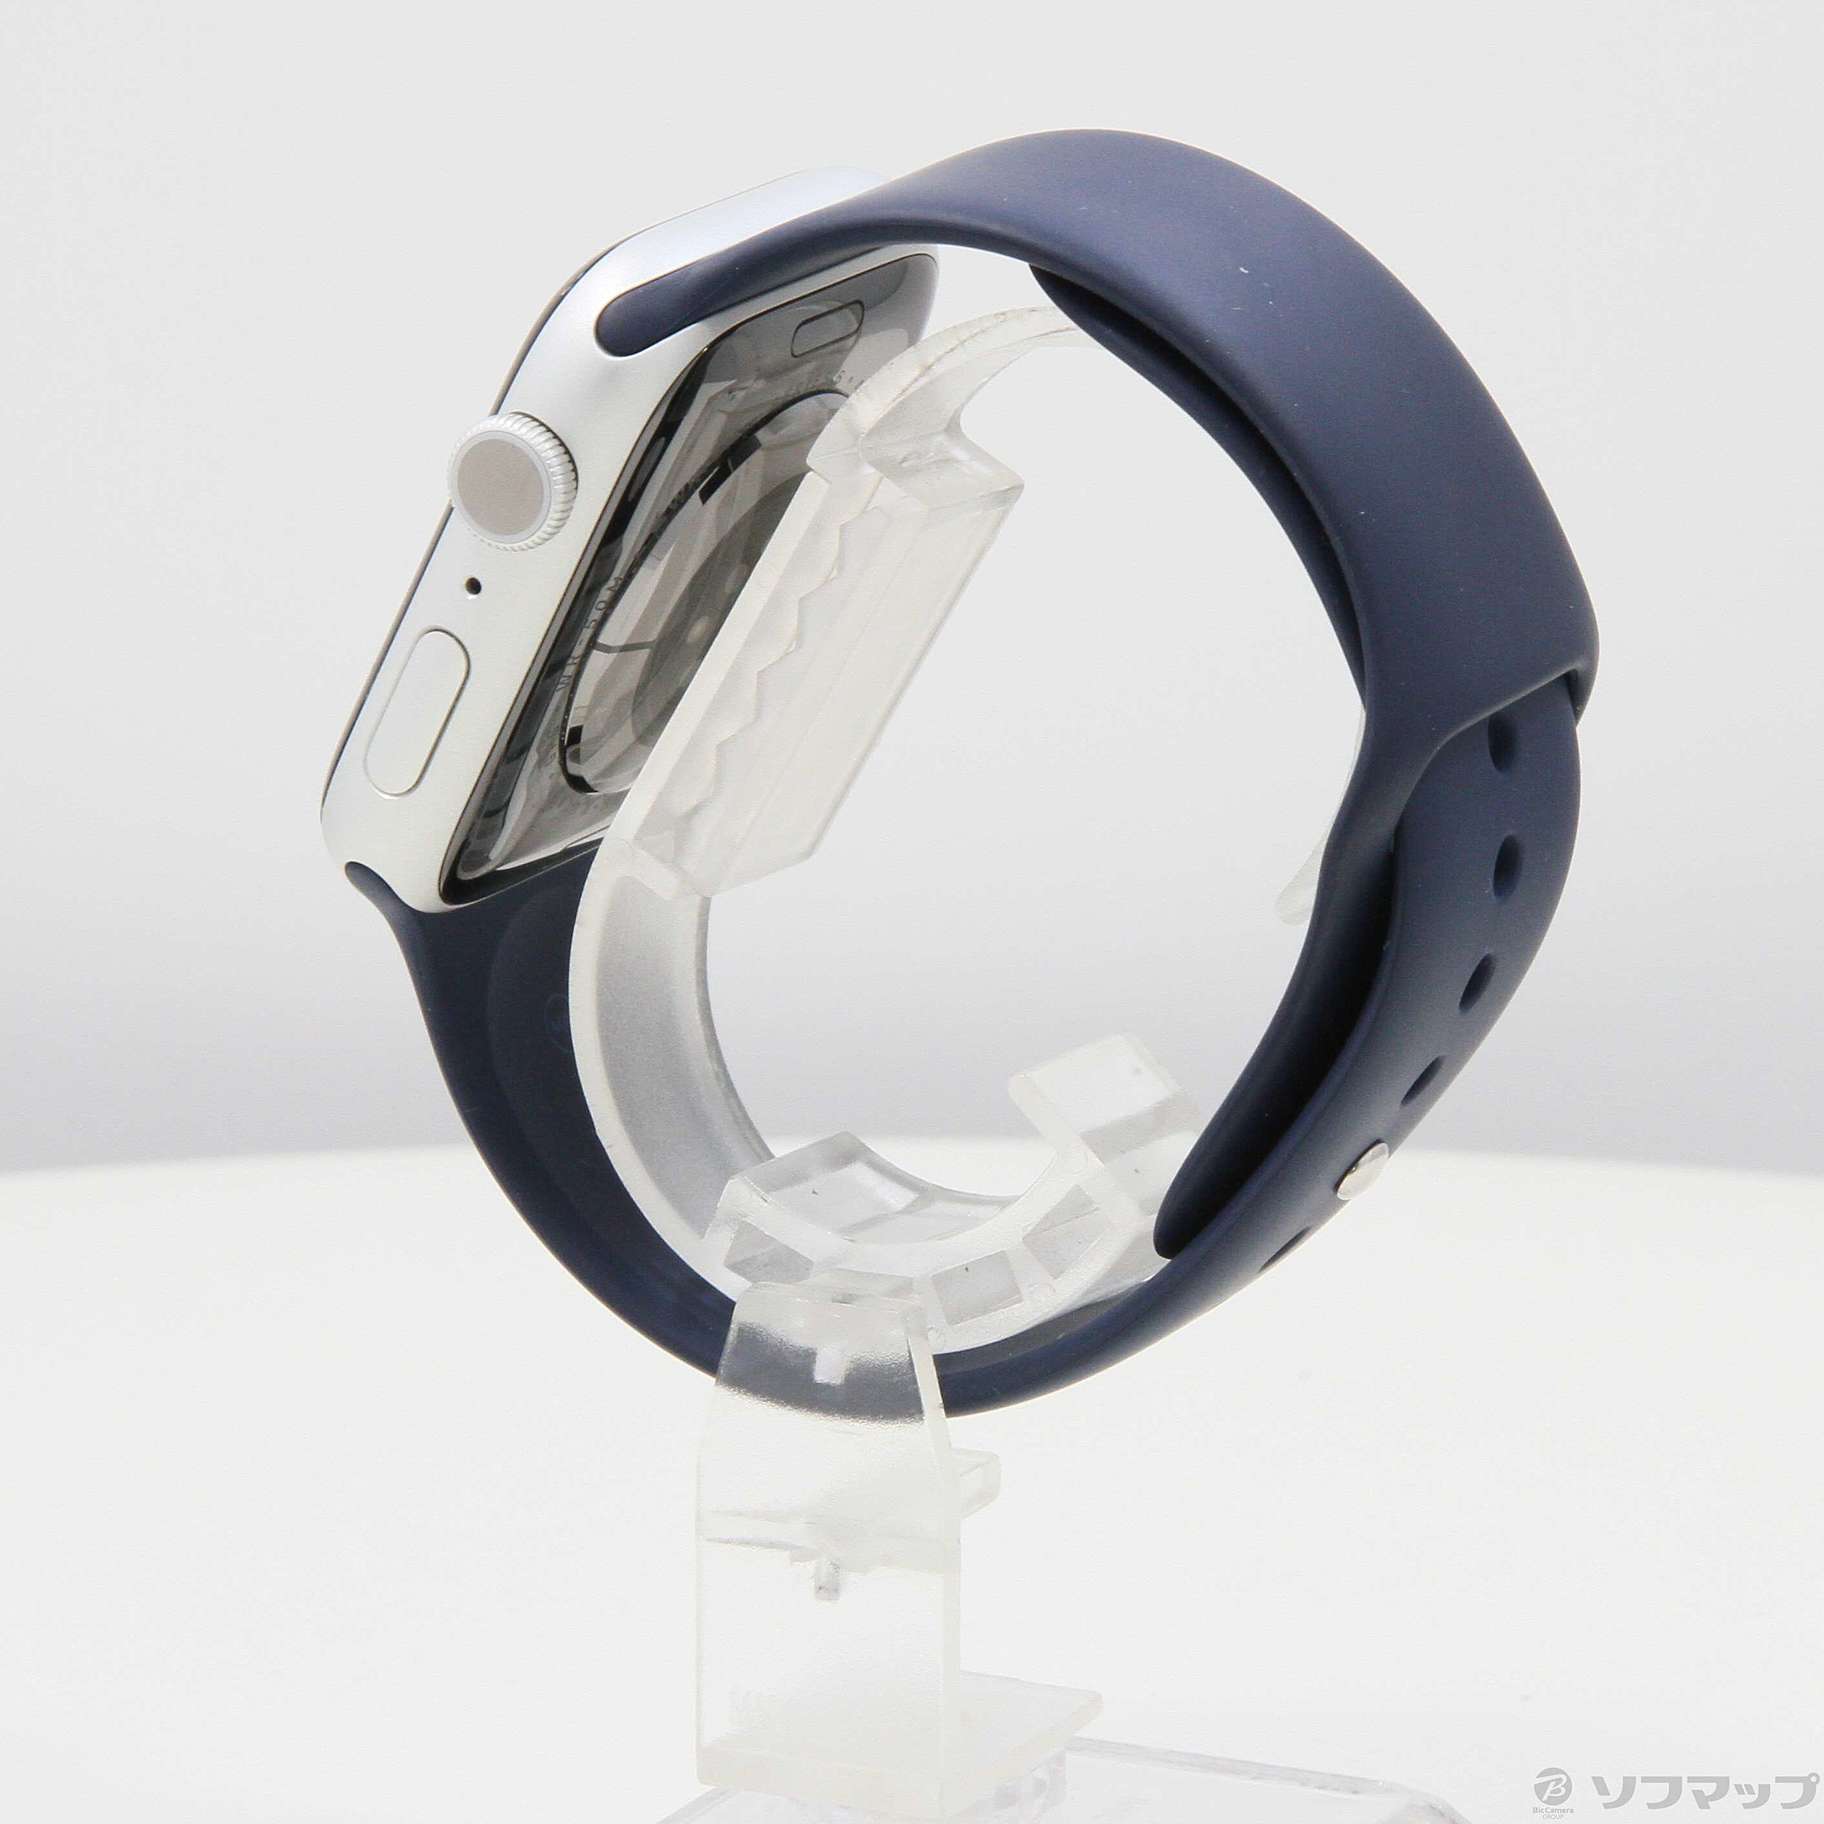 中古】Apple Watch Series 6 GPS 44mm シルバーアルミニウムケース